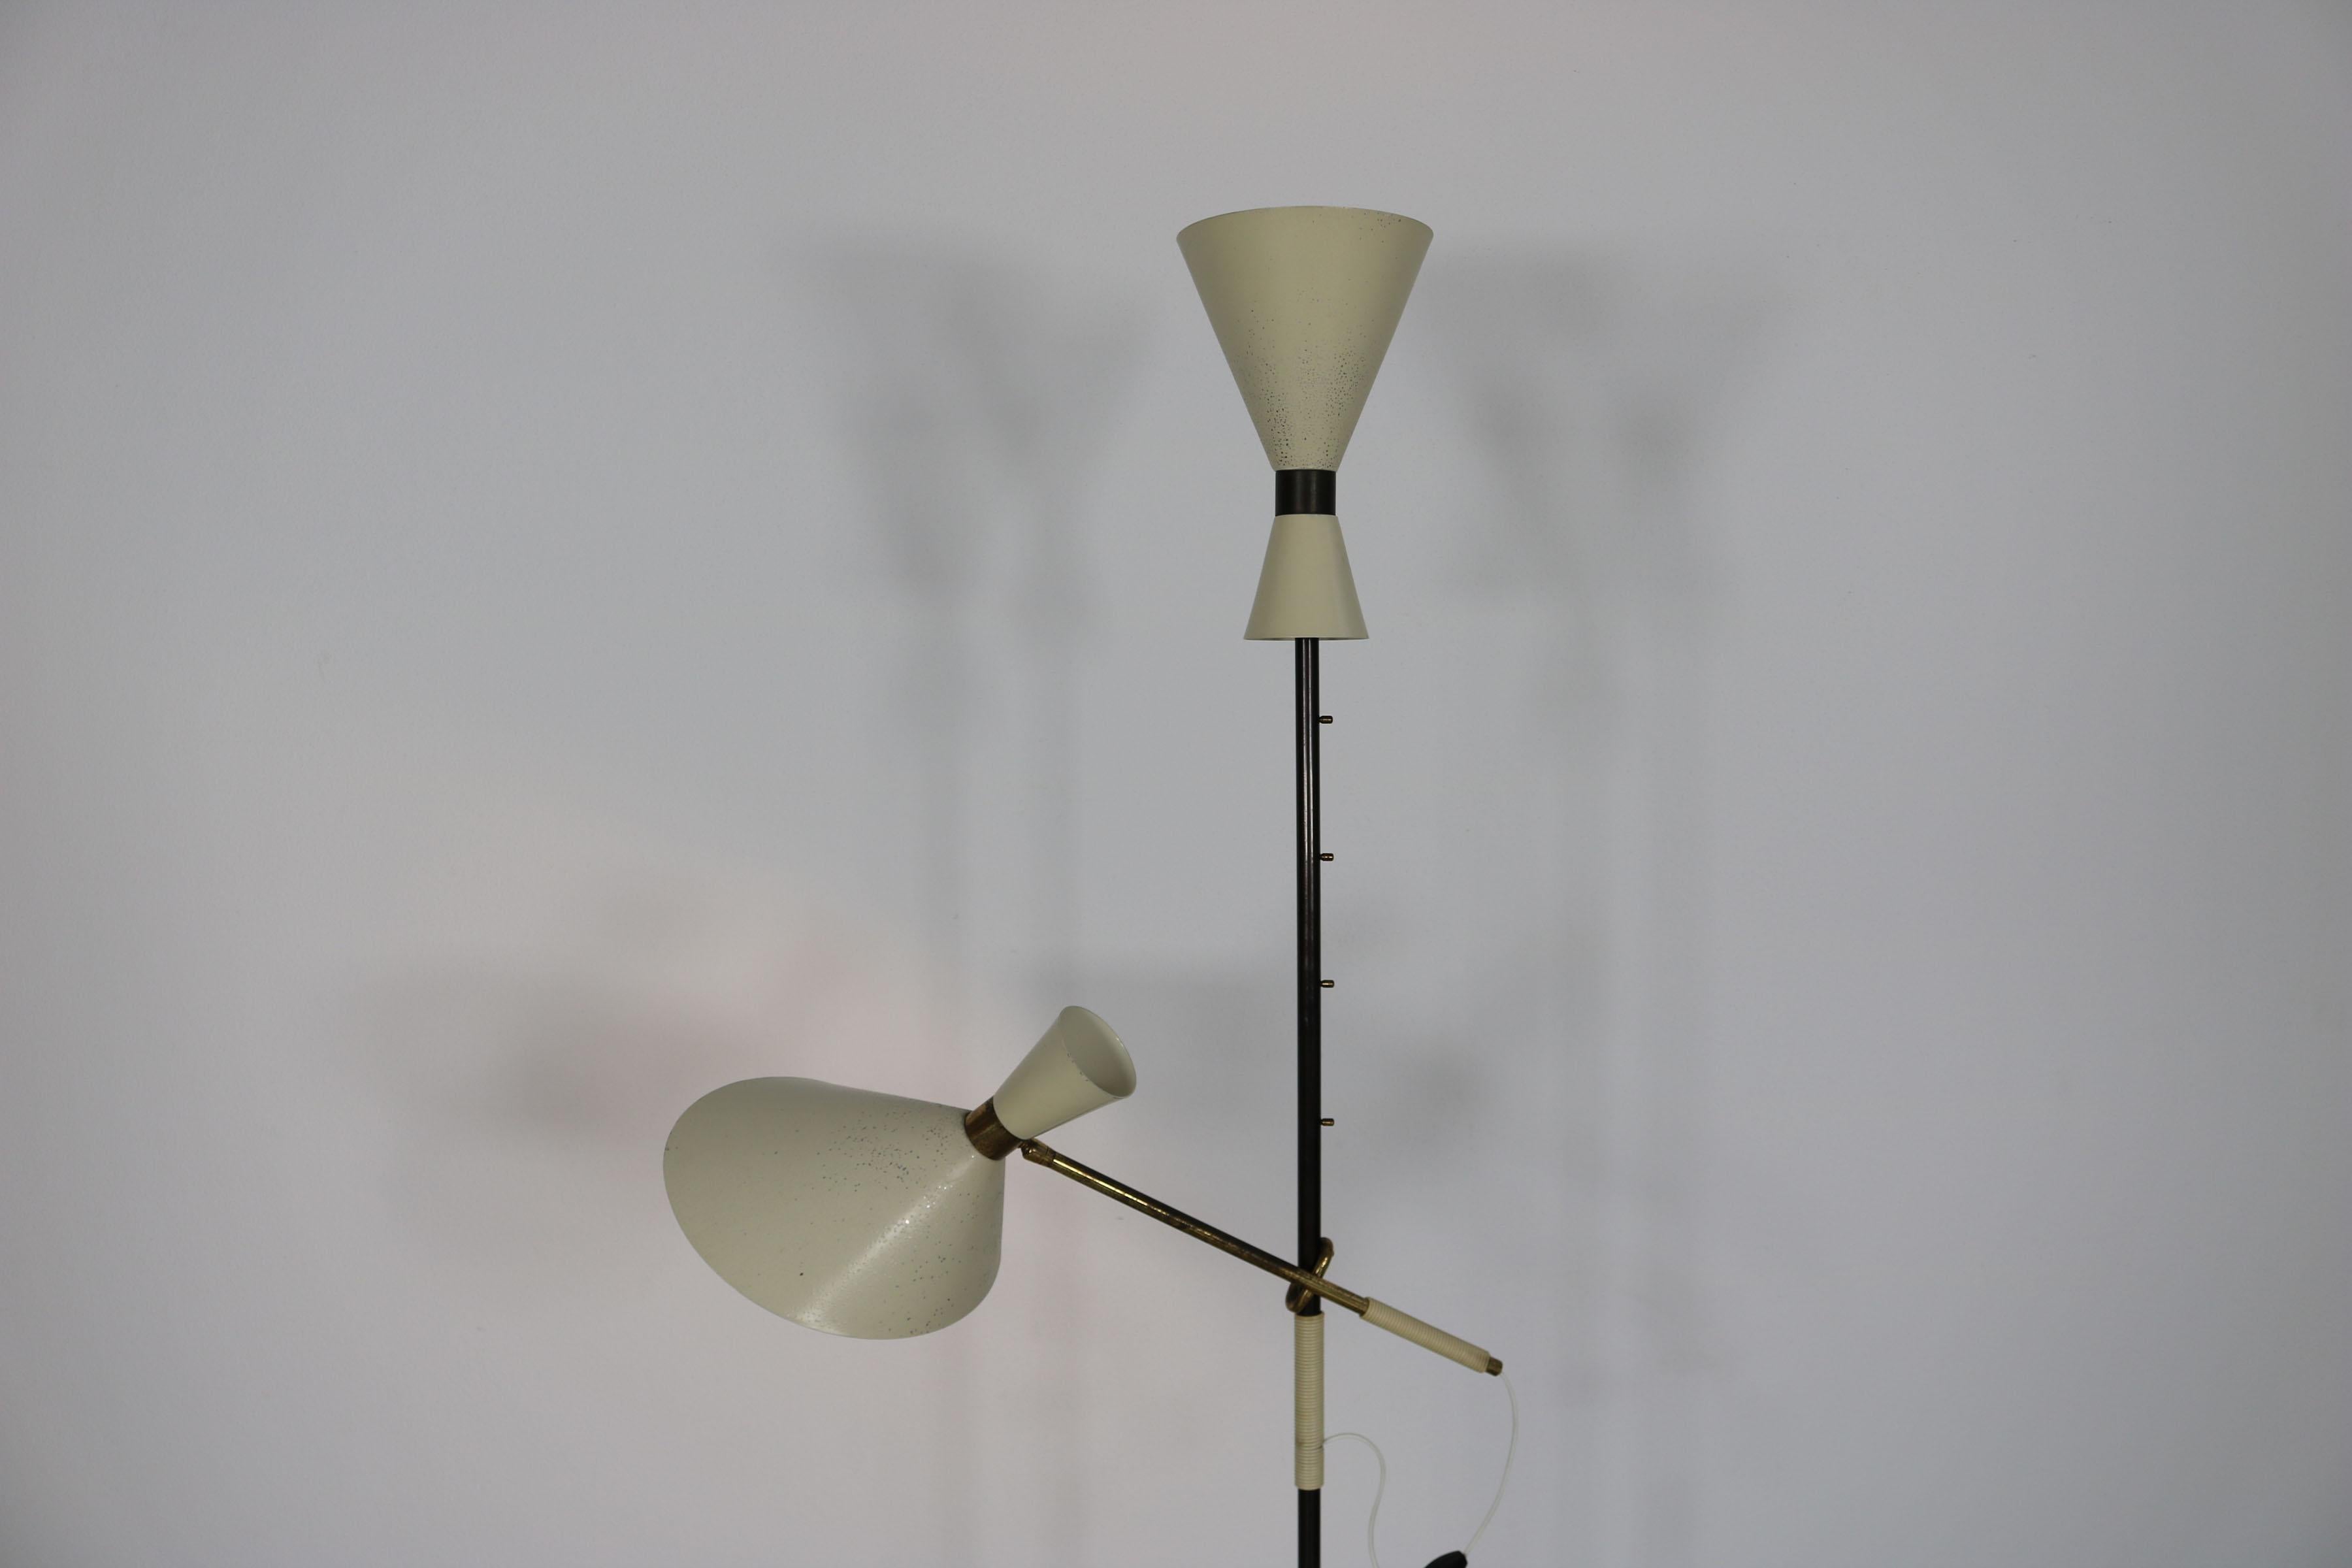  Floor Lamp - Design by J.T. Kalmar, manufactured by Kalmar, Vienna, 1950s.  13